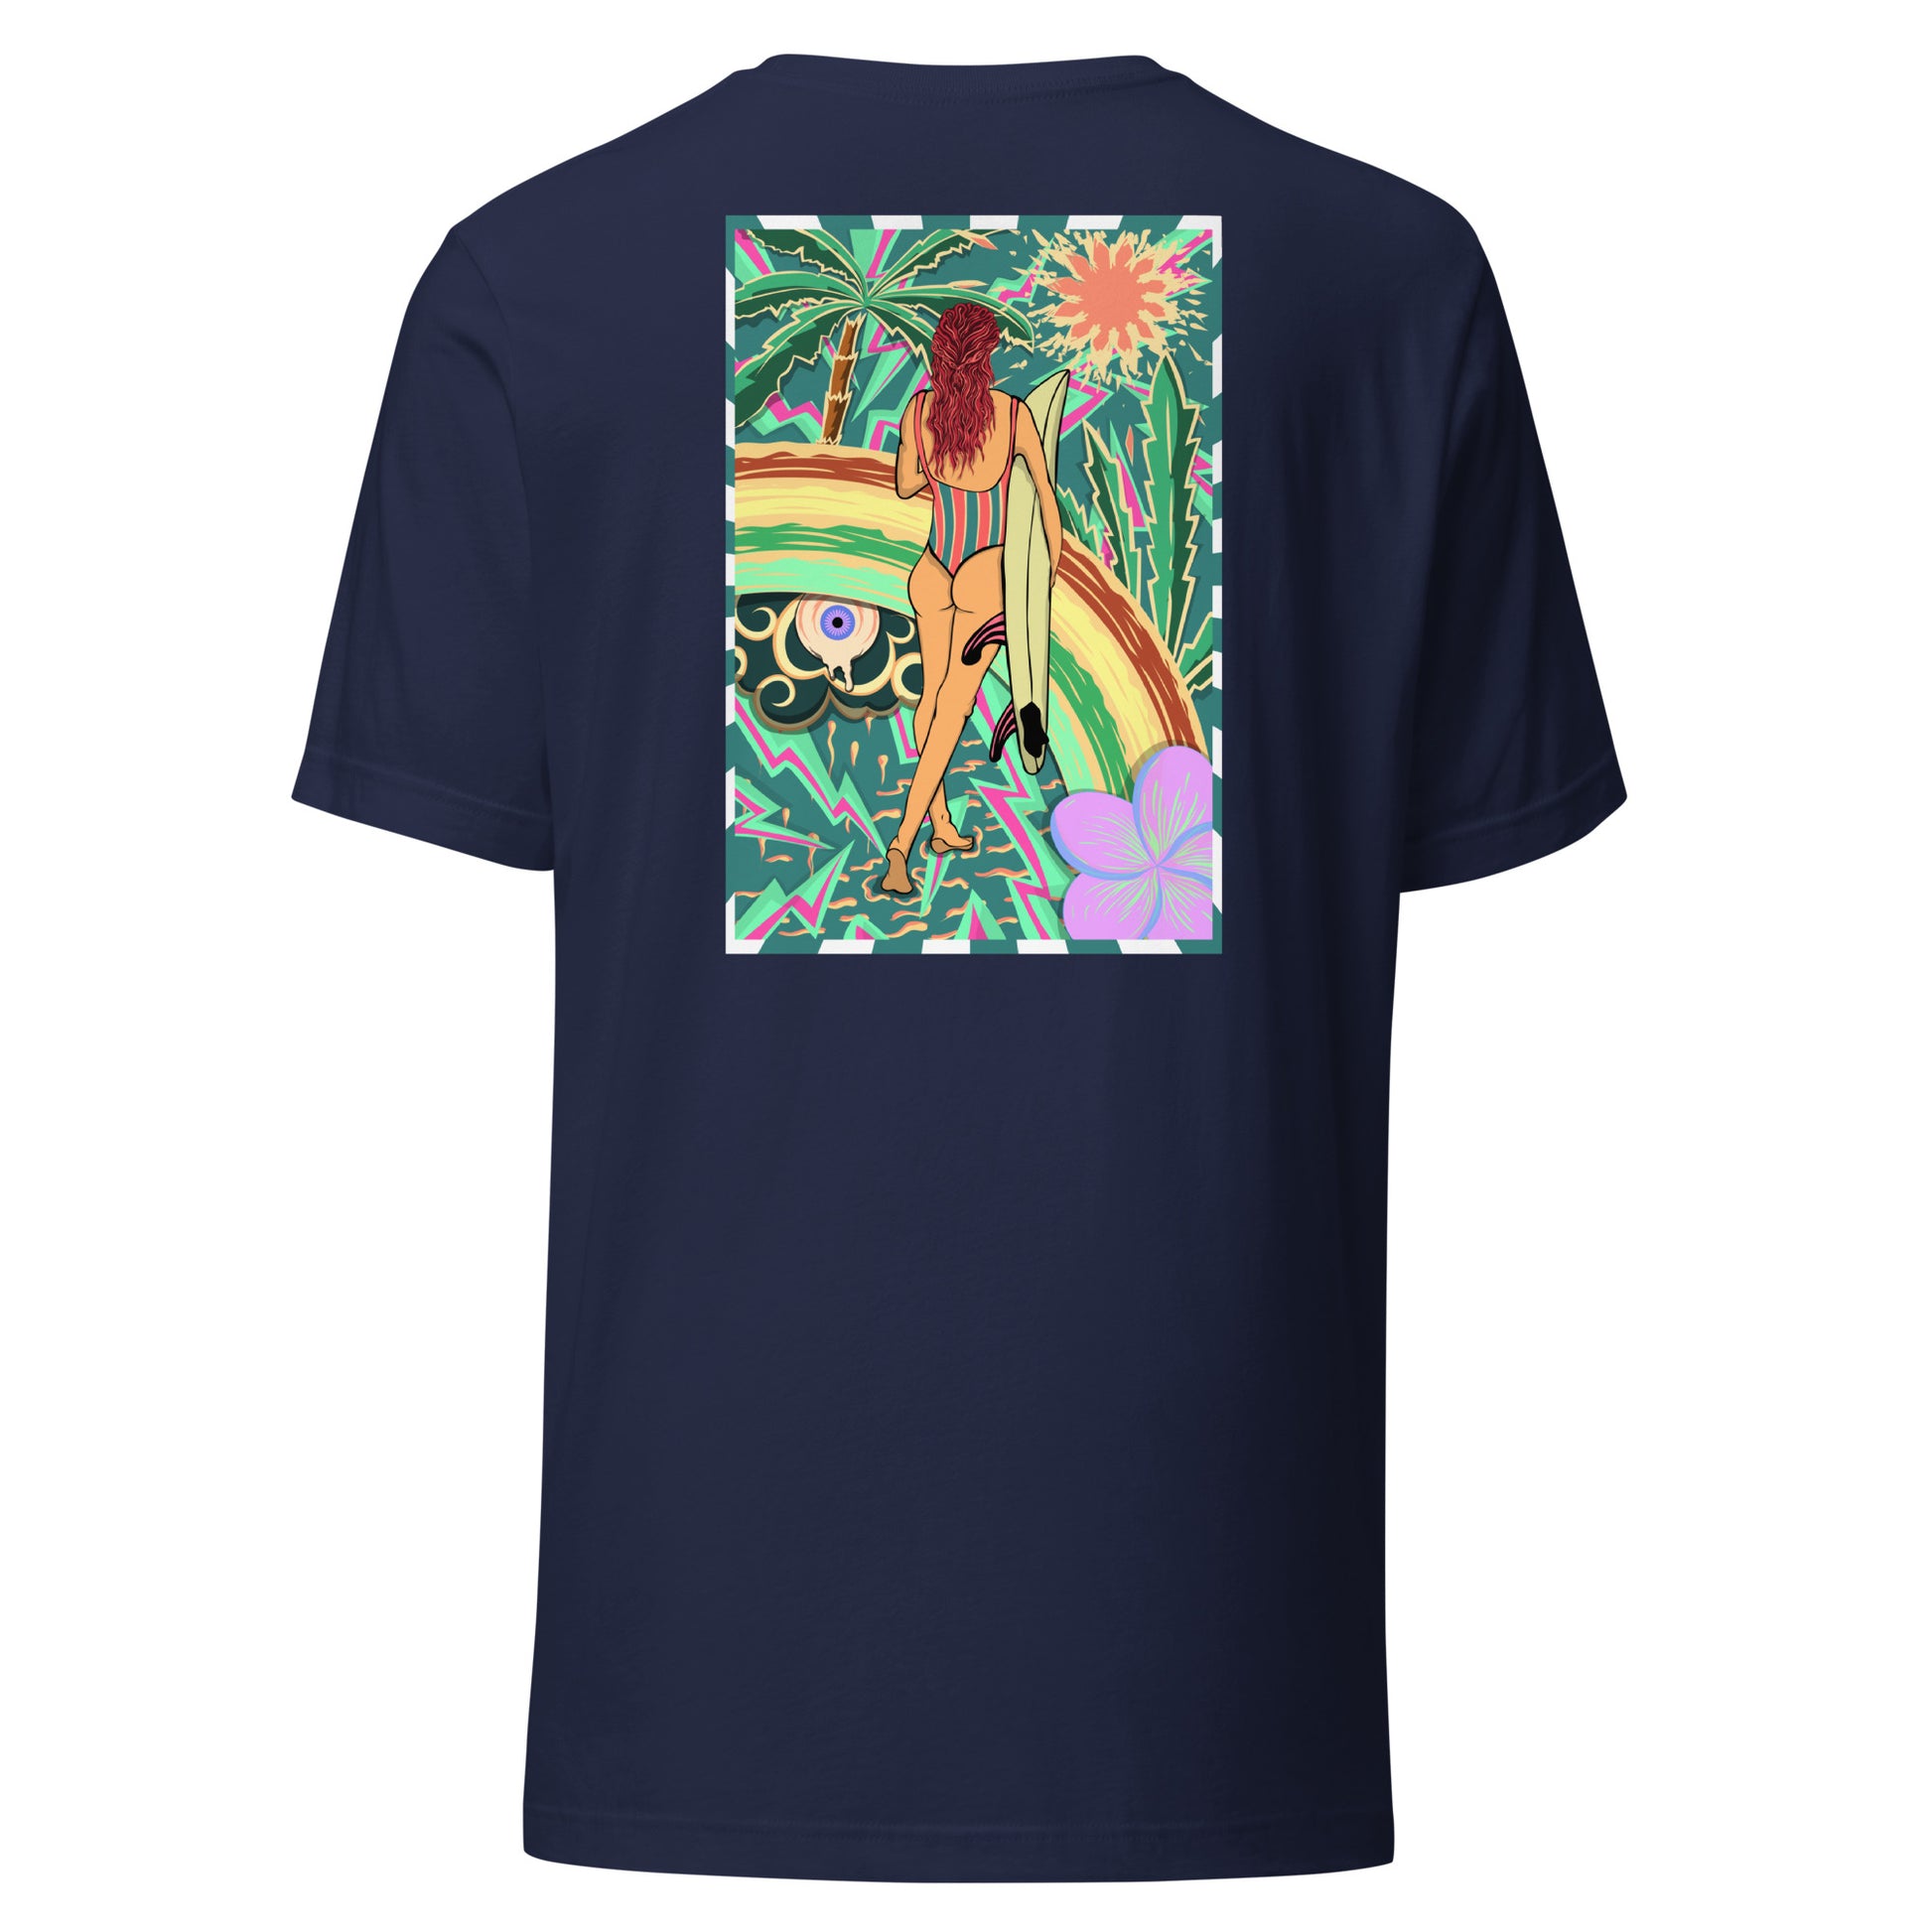 T-shirt surf vintage Walk Of Life surfeuse coloré hippie avec des palmier, fleur, arc en ciel et œil psychédélique. Tshirt dos navy